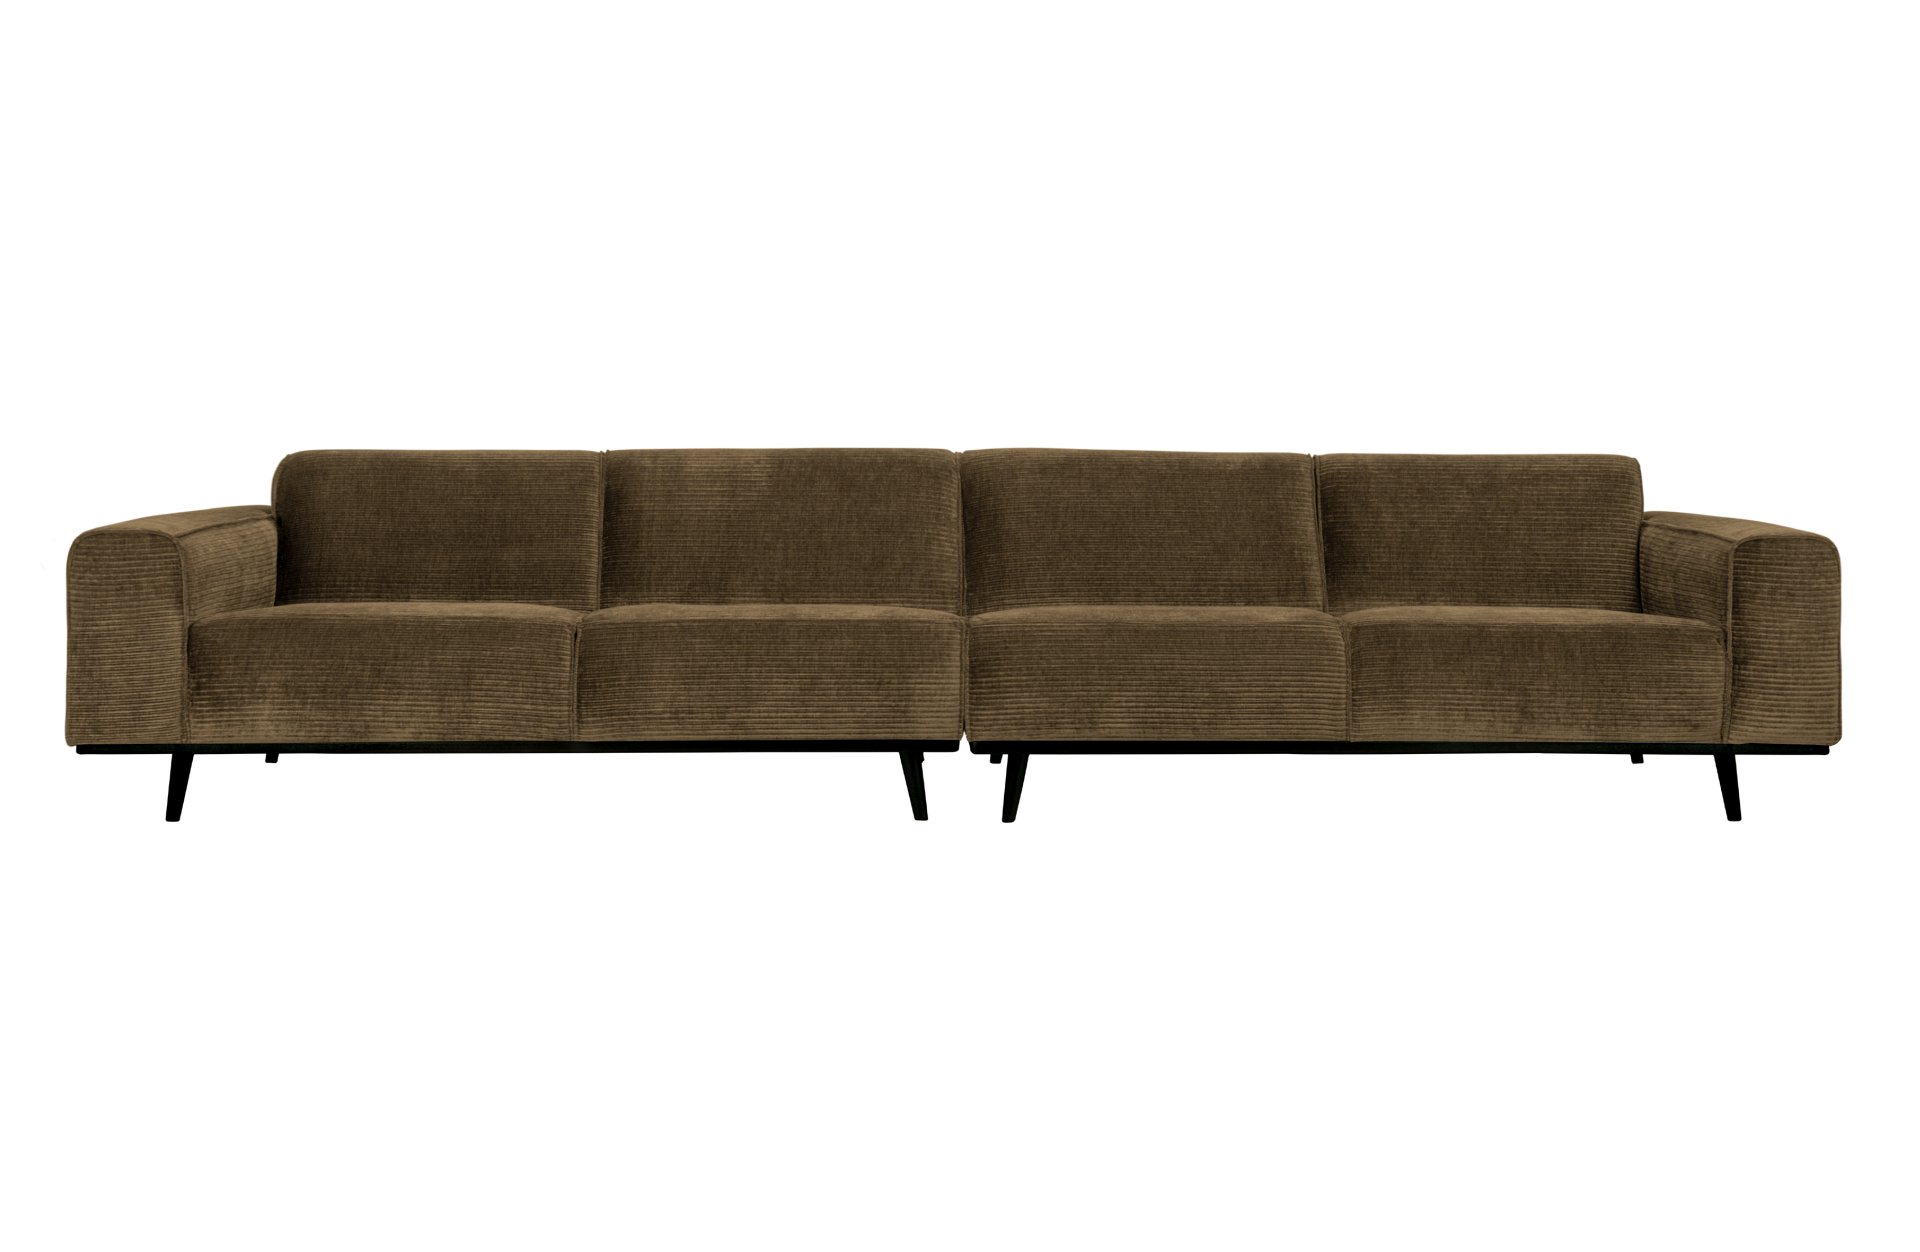 Das Sofa Statement überzeugt mit seinem modernen Design. Gefertigt wurde es aus gewebten Jacquard, welches einen braunen Farbton besitzen. Das Gestell ist aus Birkenholz und hat eine schwarze Farbe. Das Sofa hat eine Breite von 372 cm.